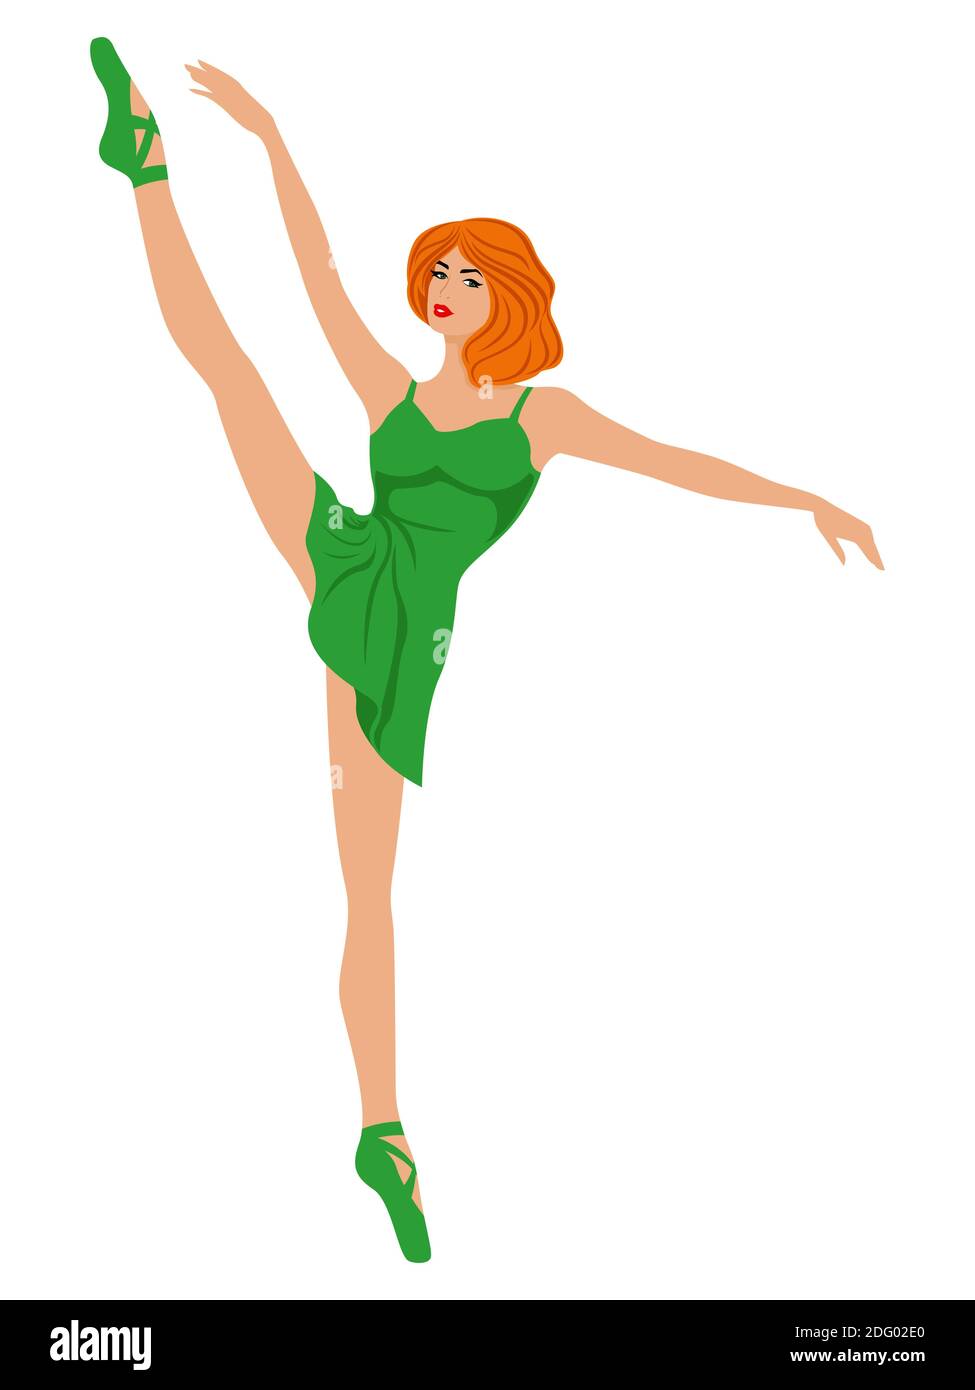 Elegante Ballerina in grünem Kleid in spitzenschuh, Handzeichnung Vektor, isoliert auf dem weißen Hintergrund Stock Vektor